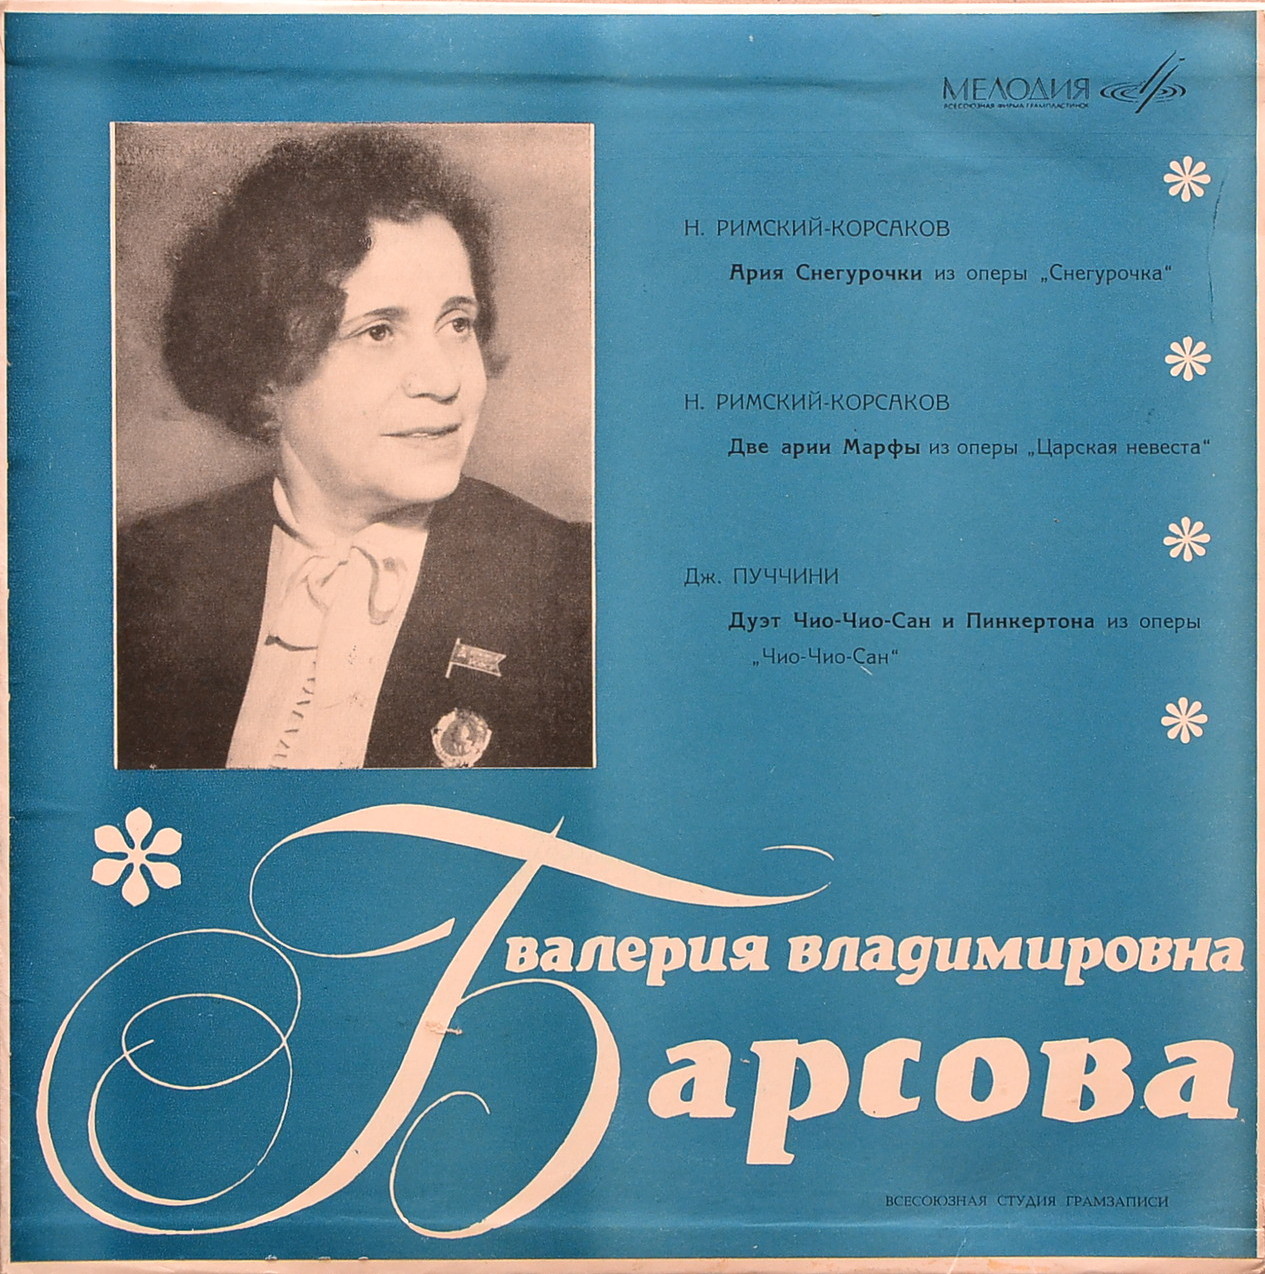 Валерия БАРСОВА (сопрано)